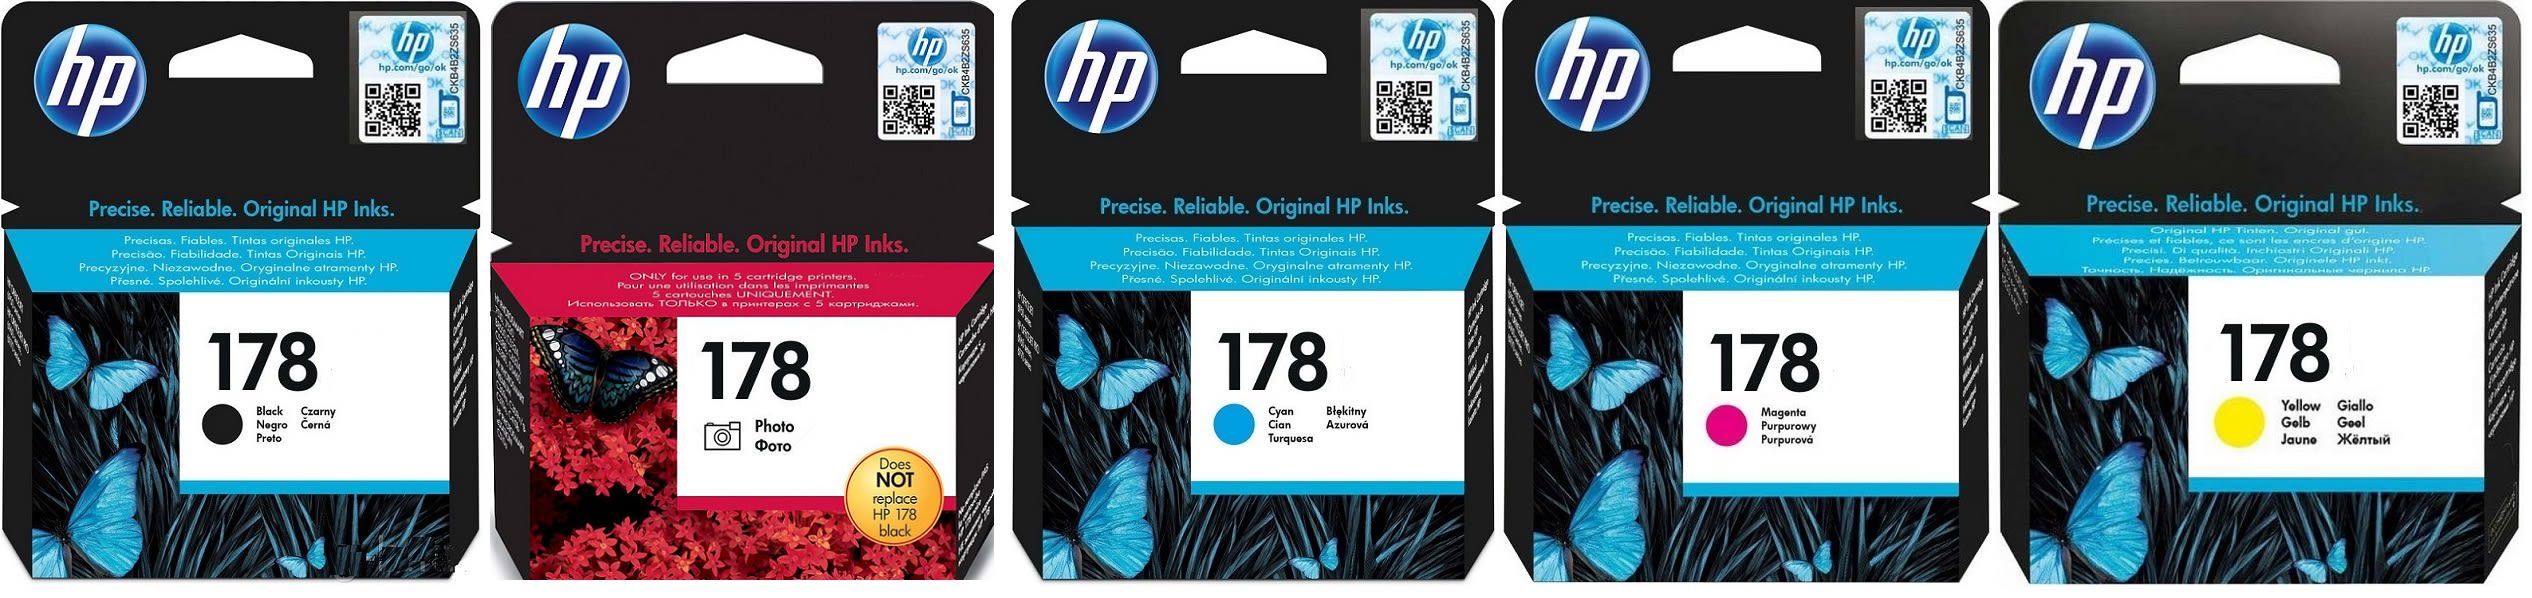 Картриджи hp 178 для HP Photosmart C5393. Купить комплект оригинальных картриджей.